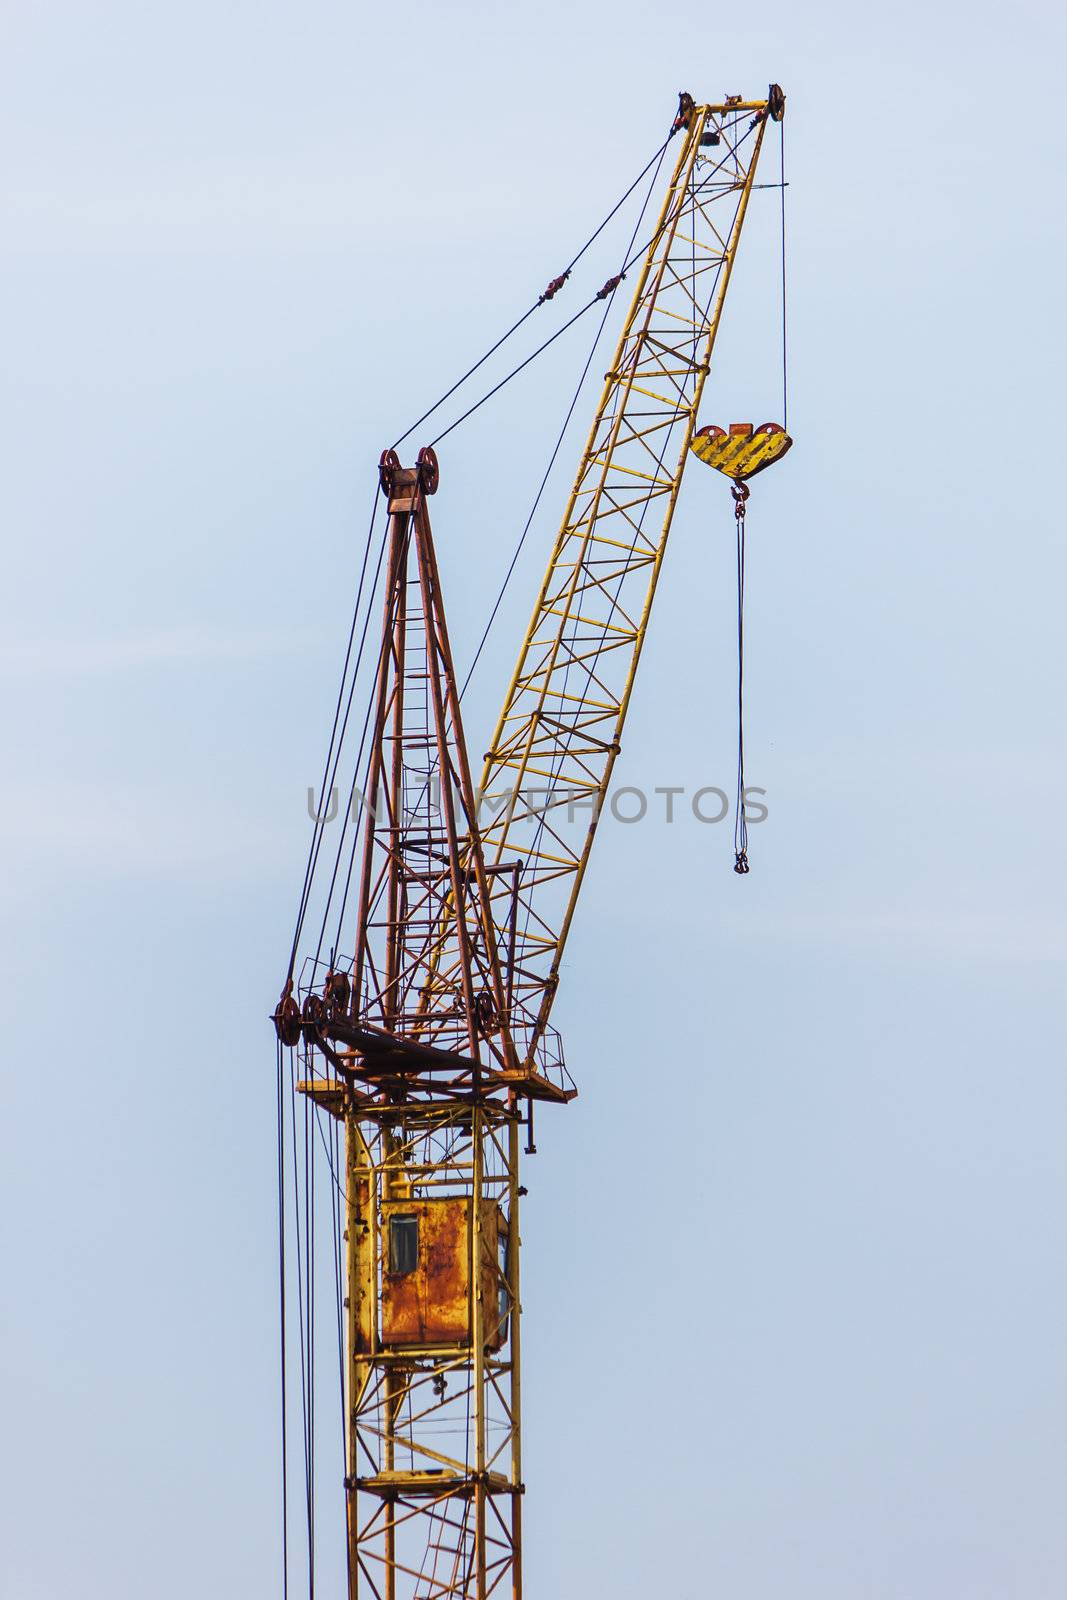 Building hoisting crane against the blue sky